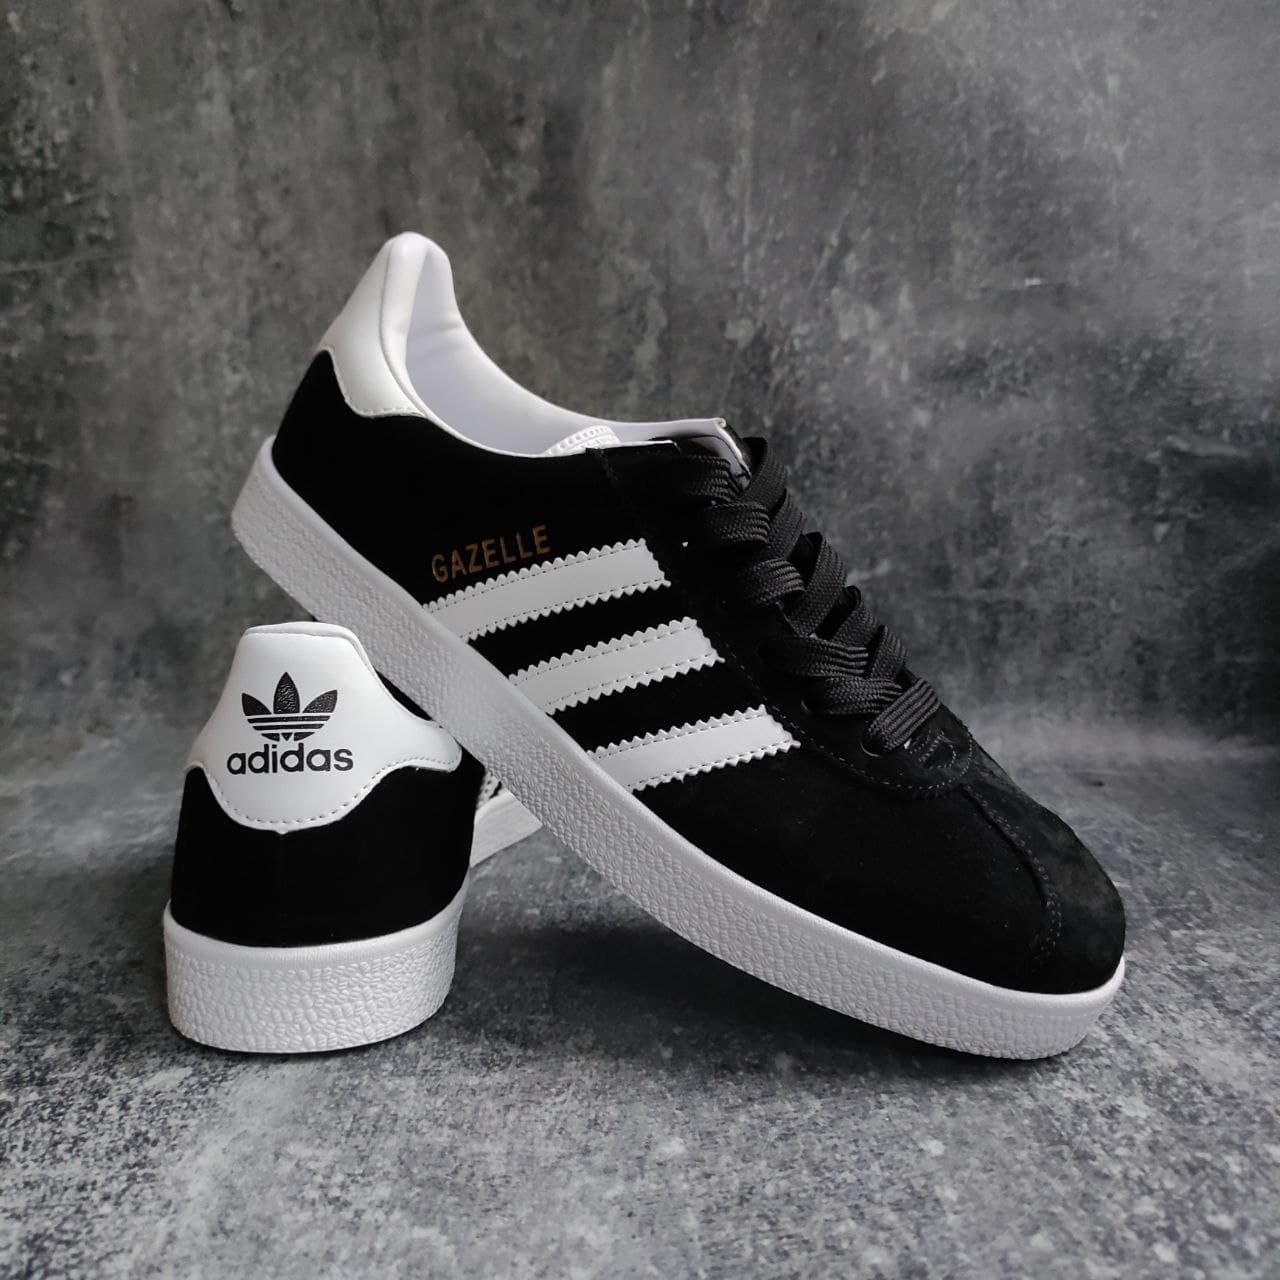 

Мужские кроссовки кеды Adidas Gazelle черные на белой подошве, Черный